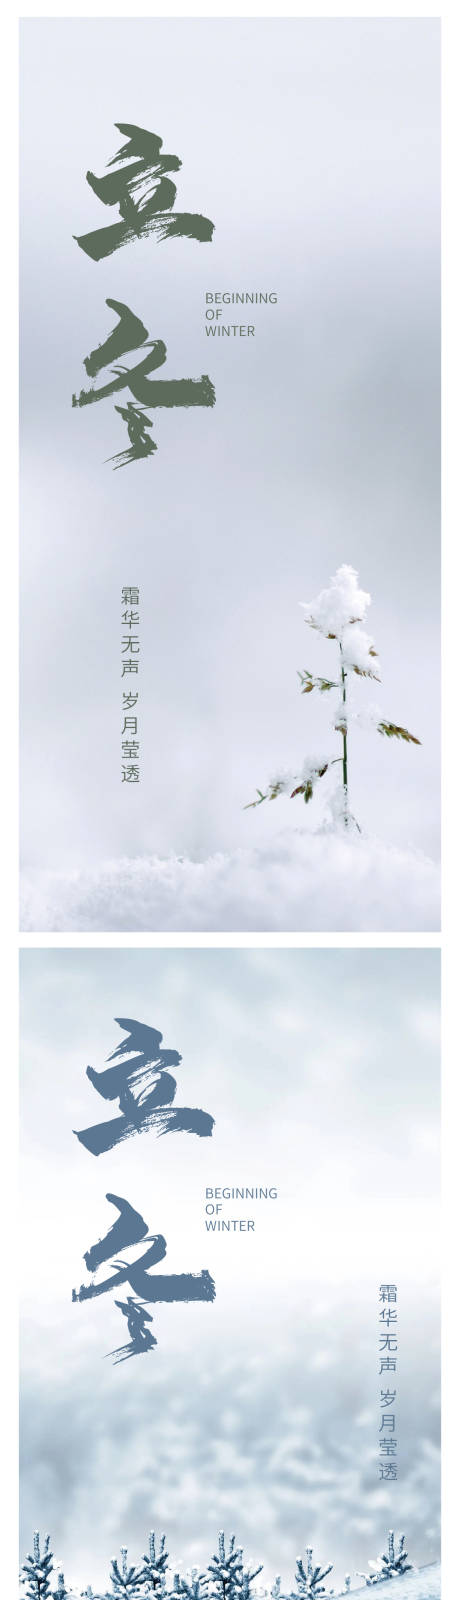 立冬节气系列海报